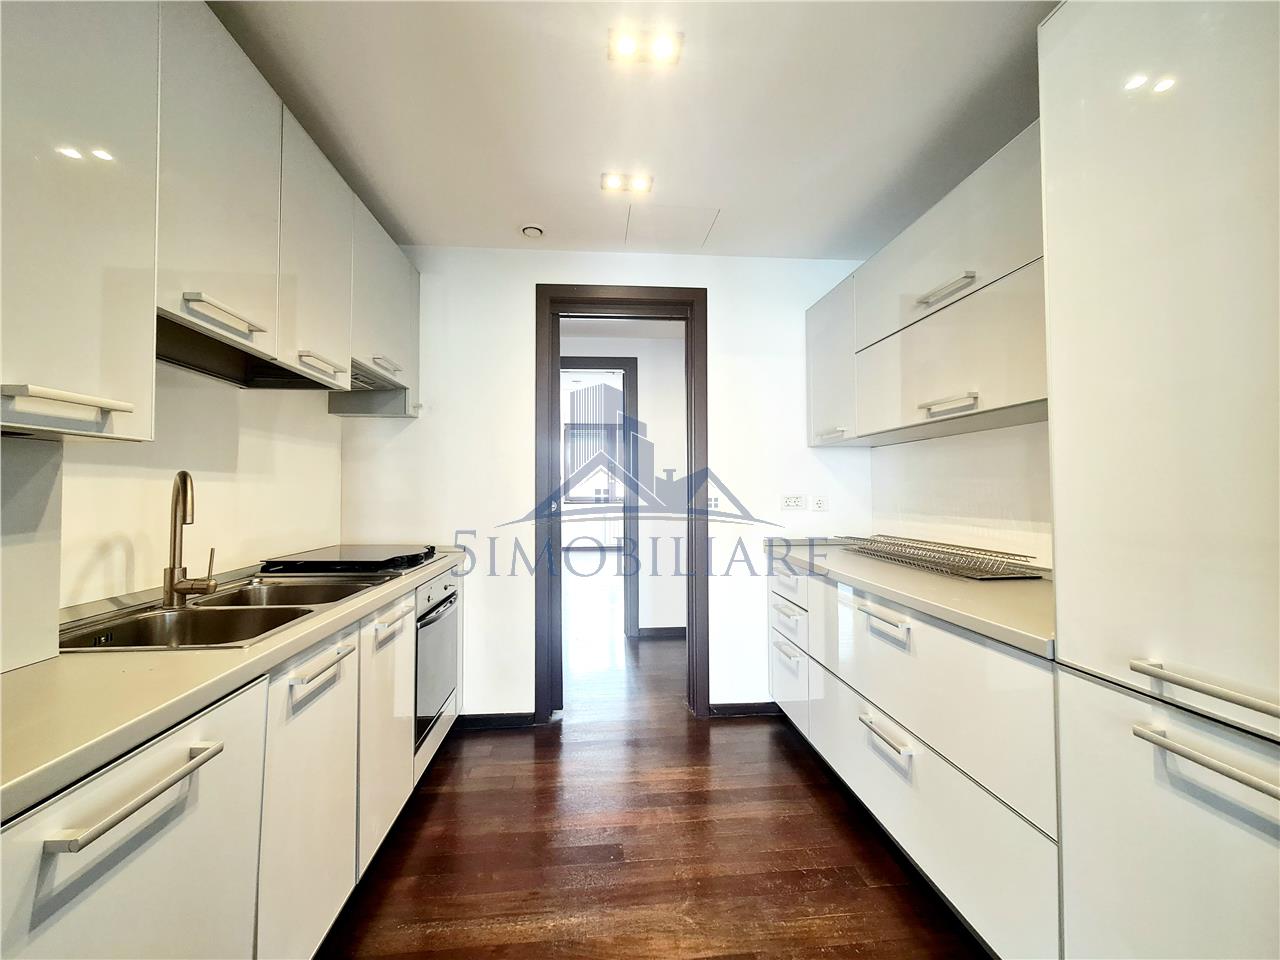 Premium location / 5 Rooms /220 sqm apartment for rent